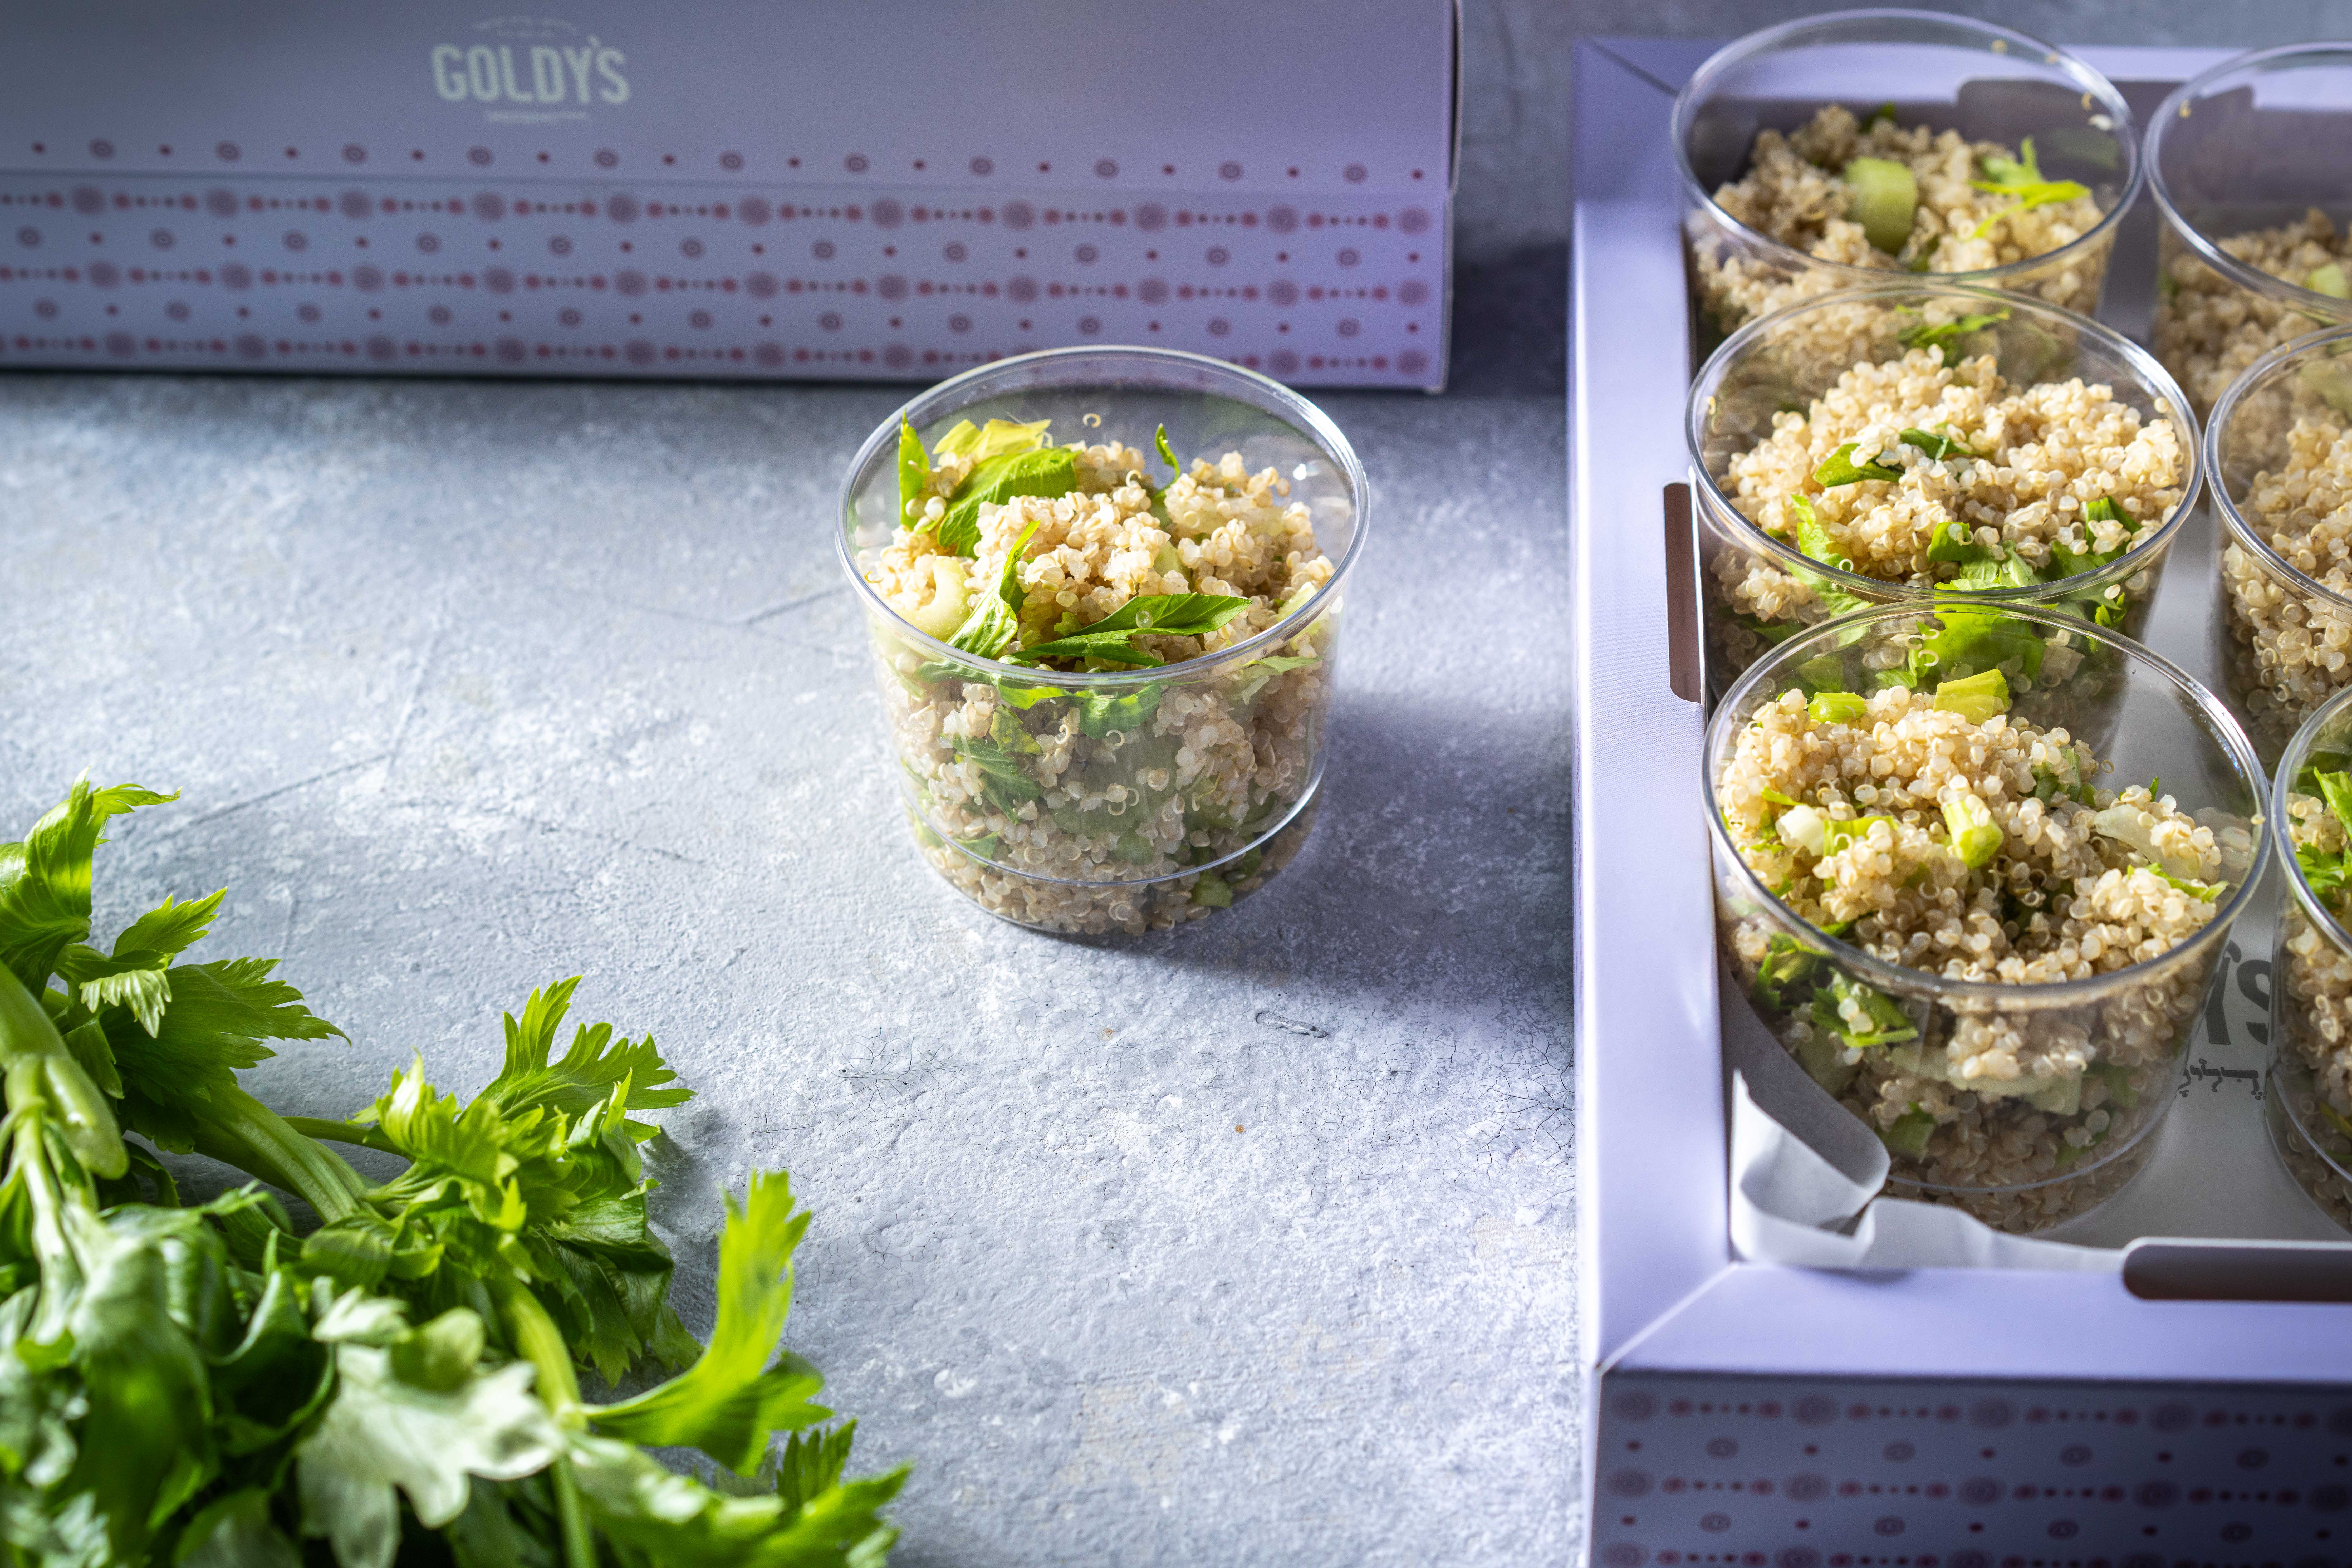 A tray of quinoa salad cups